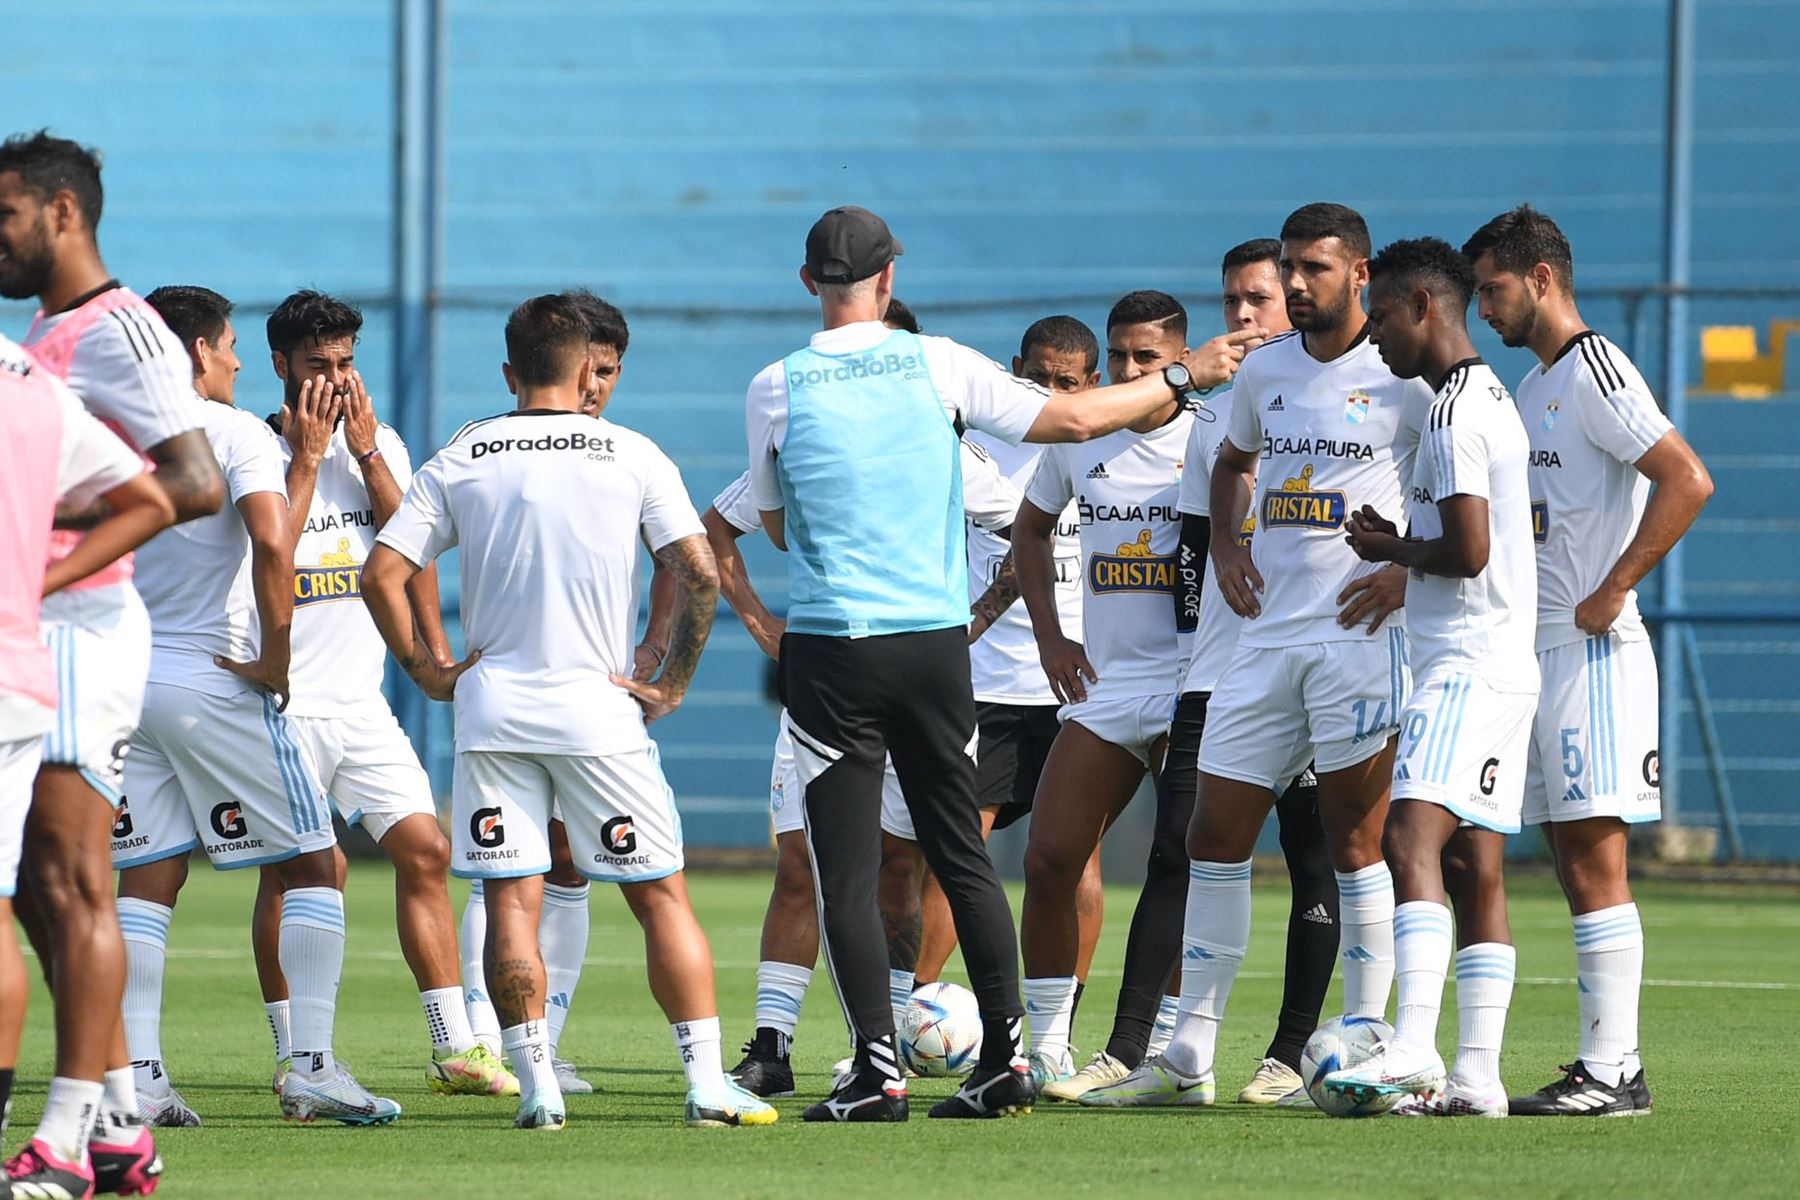 Sporting Cristal gana por ‘walkover’ al club Alianza Lima tras la ausencia del plantel blanquiazul y sumó sus tres primeros puntos  por la fecha 3 de la  Liga 1 Apertura en el estadio Alberto Gallardo.
Foto: Liga 1